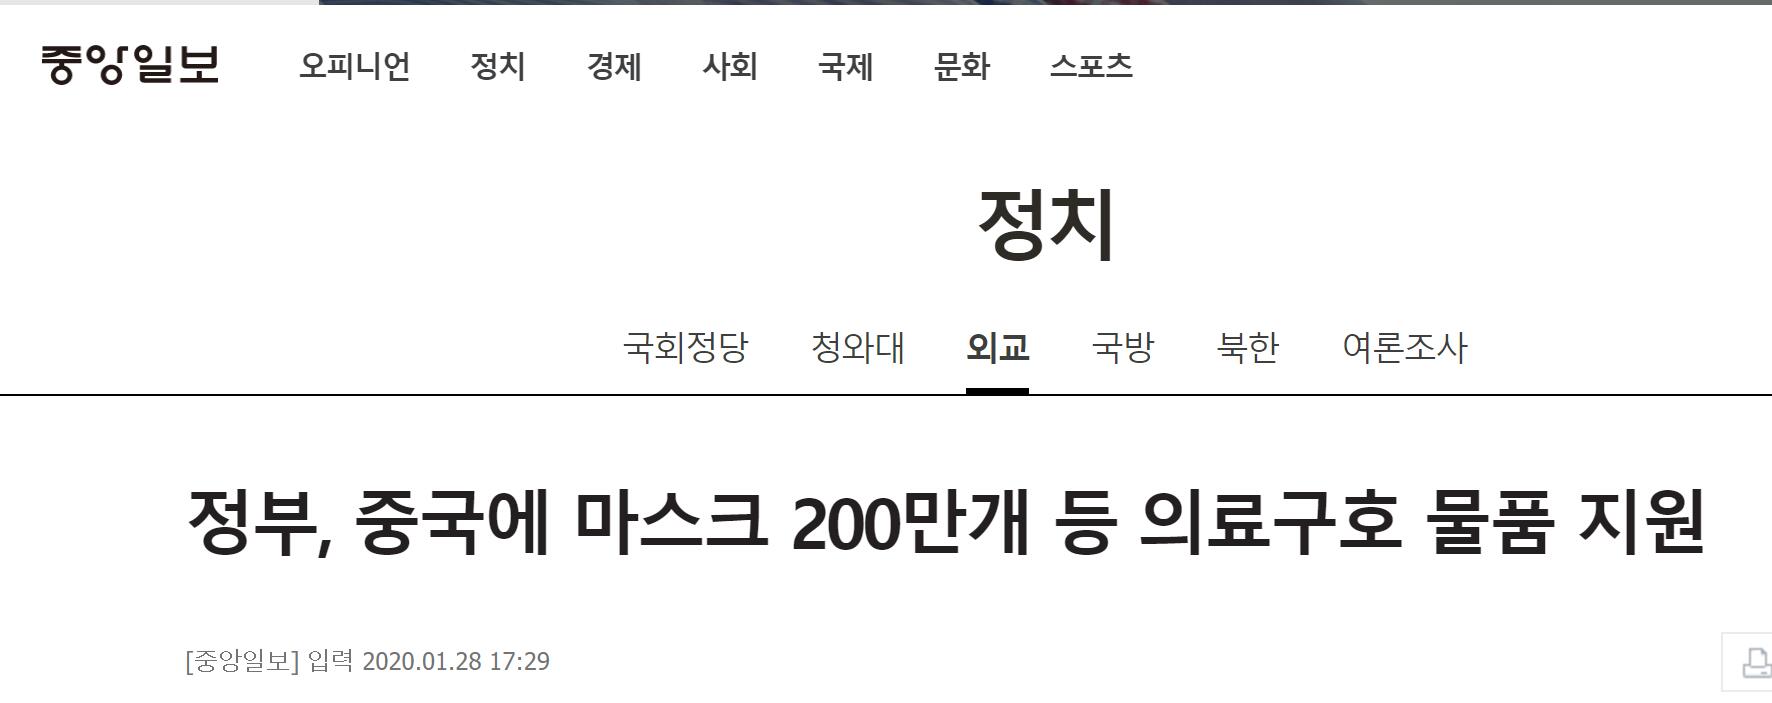 韩国《中央日报》报道截图